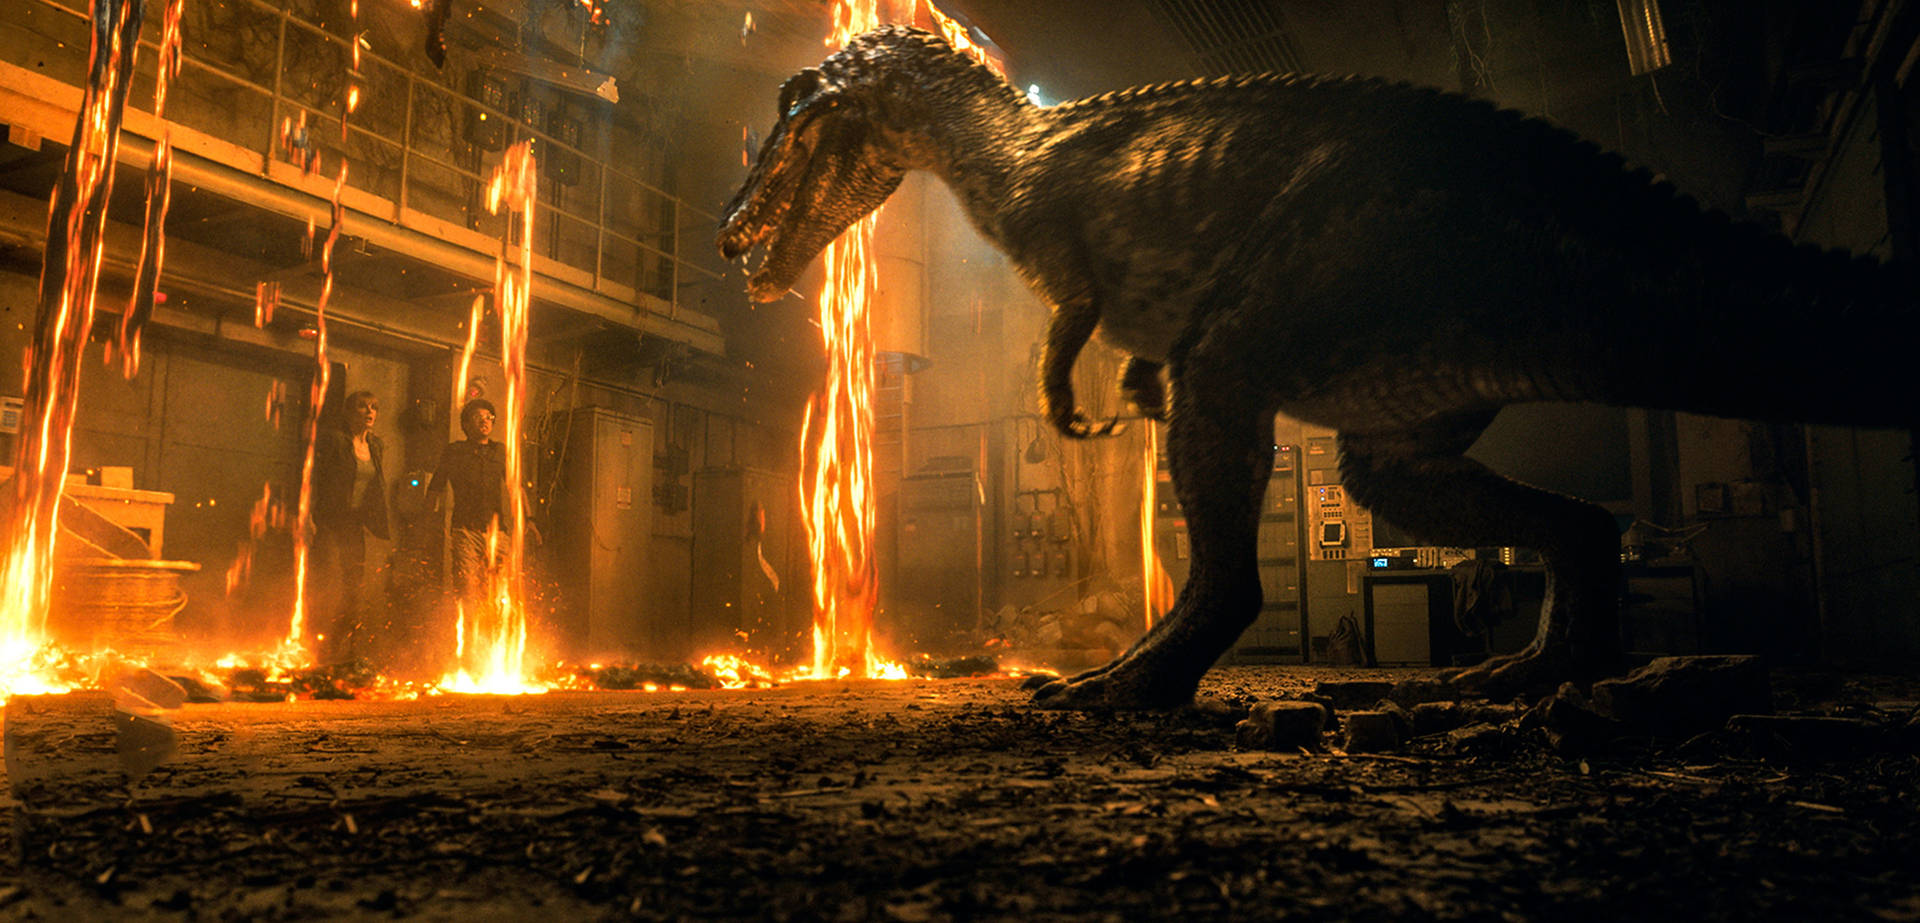 Jurassic World Movie Scene Background